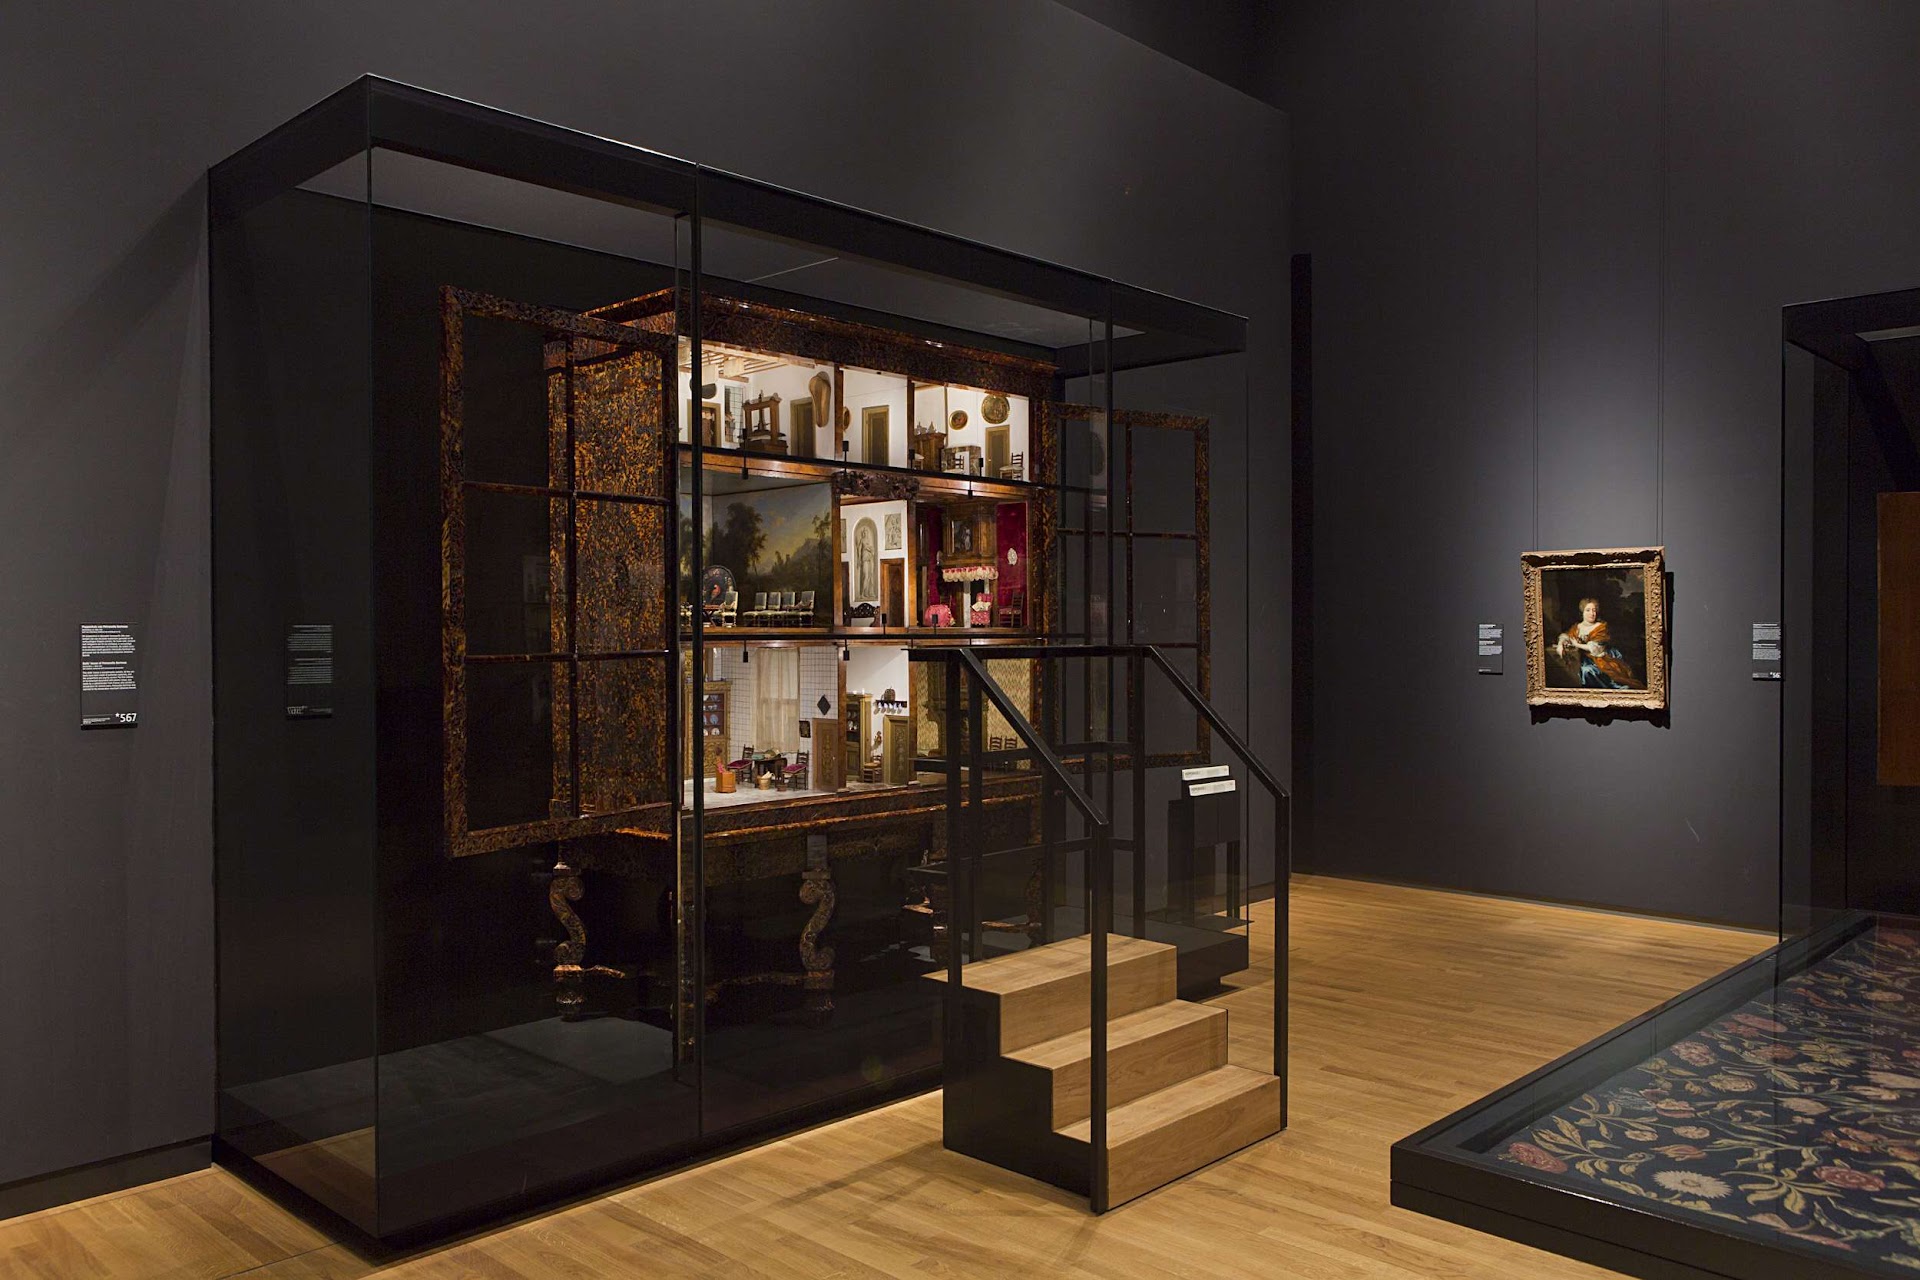 Het poppenhuis van Petronella Oortman en portret van Petronella Dunois van  Nicolaes Maes op zaal, 2013 - Rijksmuseum